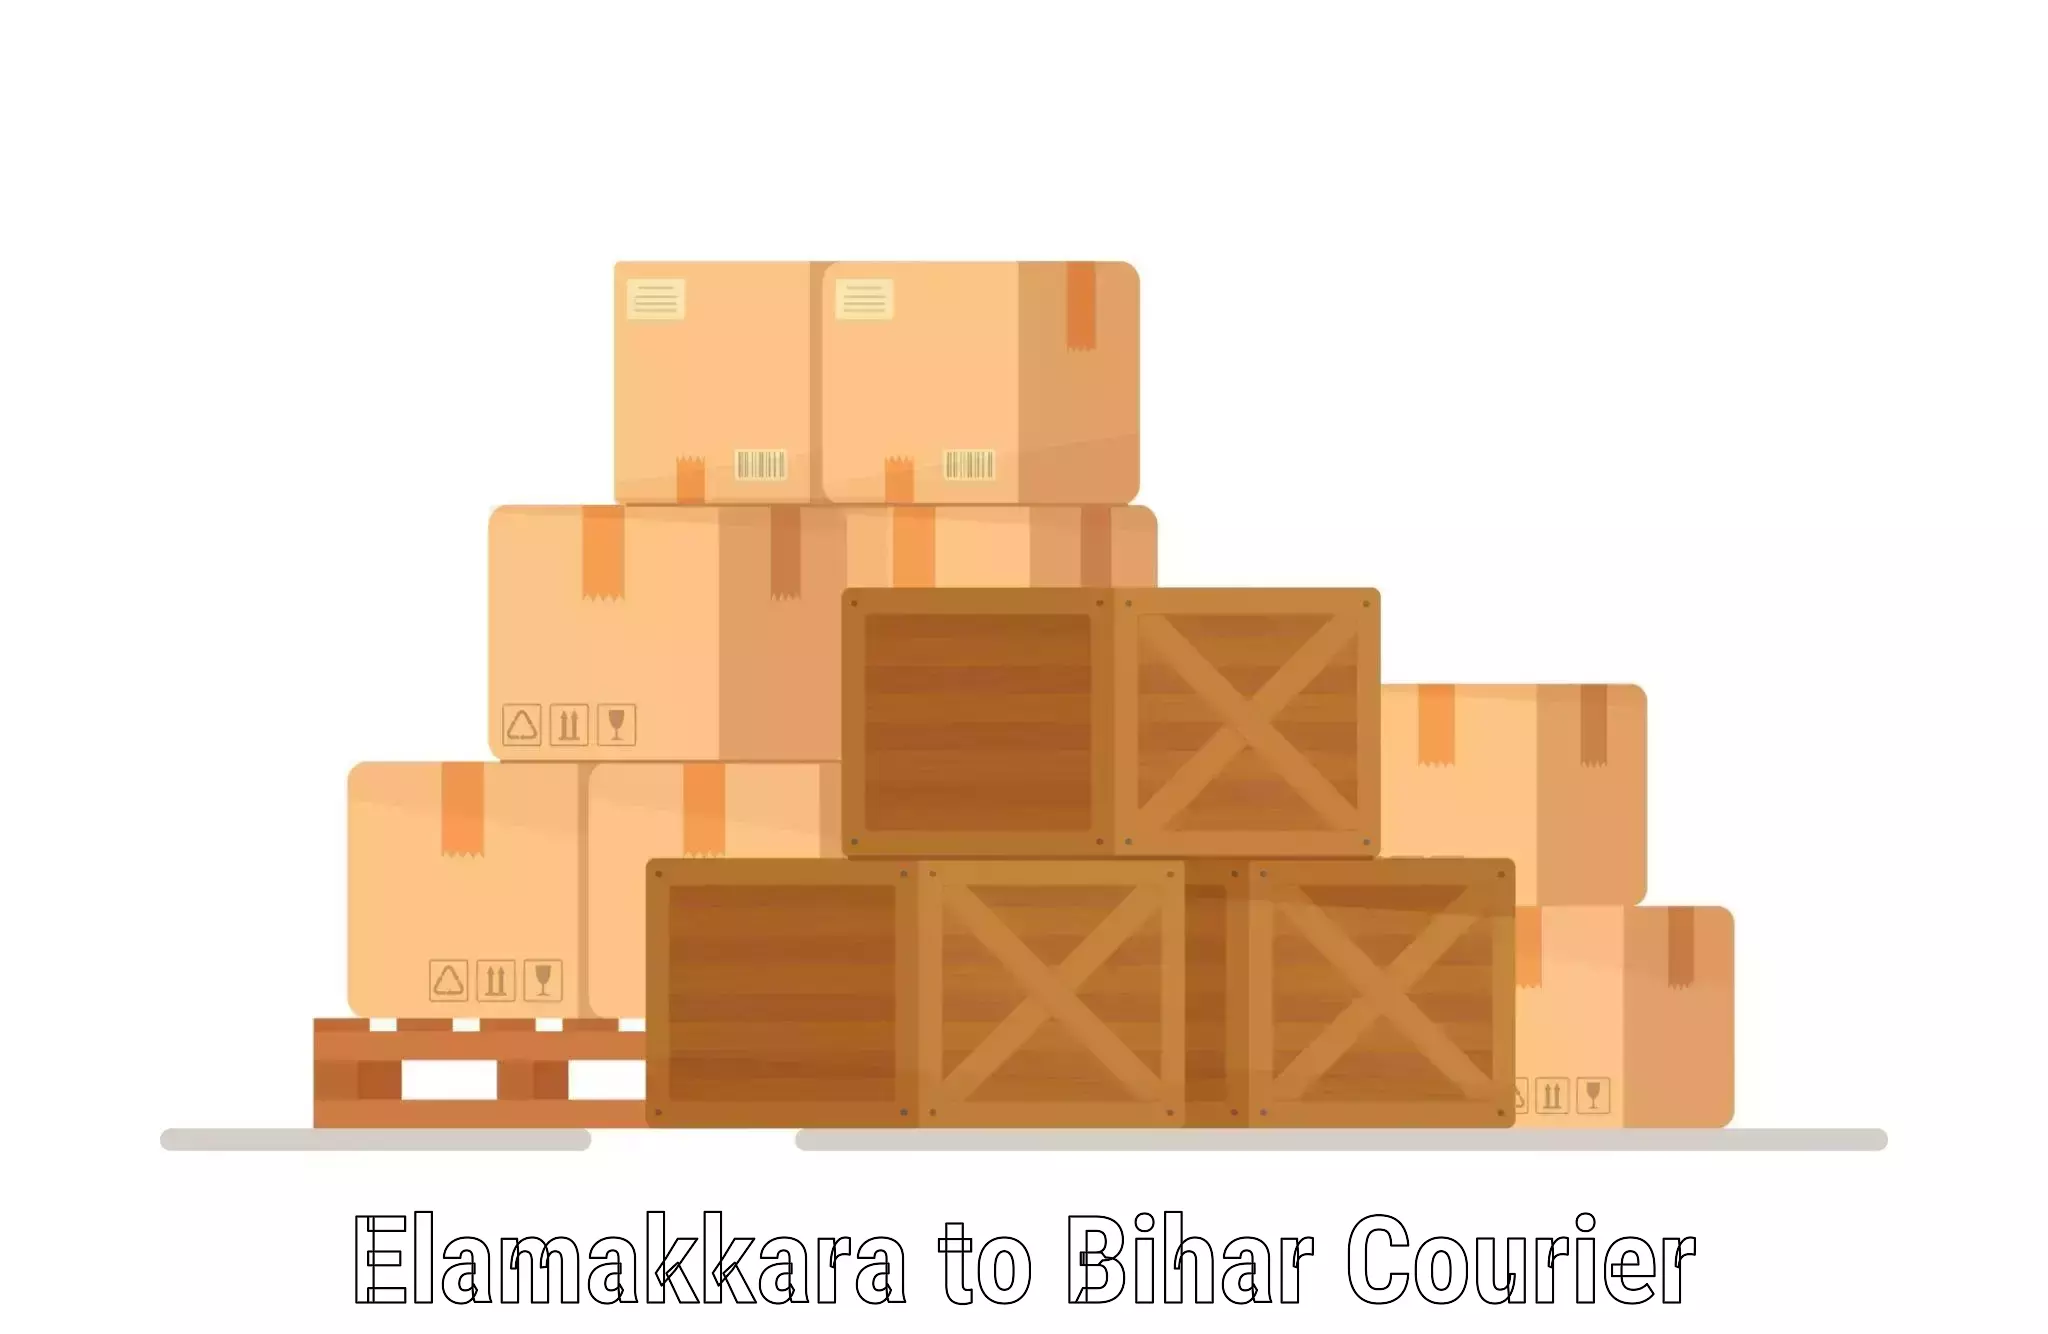 Cargo courier service Elamakkara to Bahadurganj